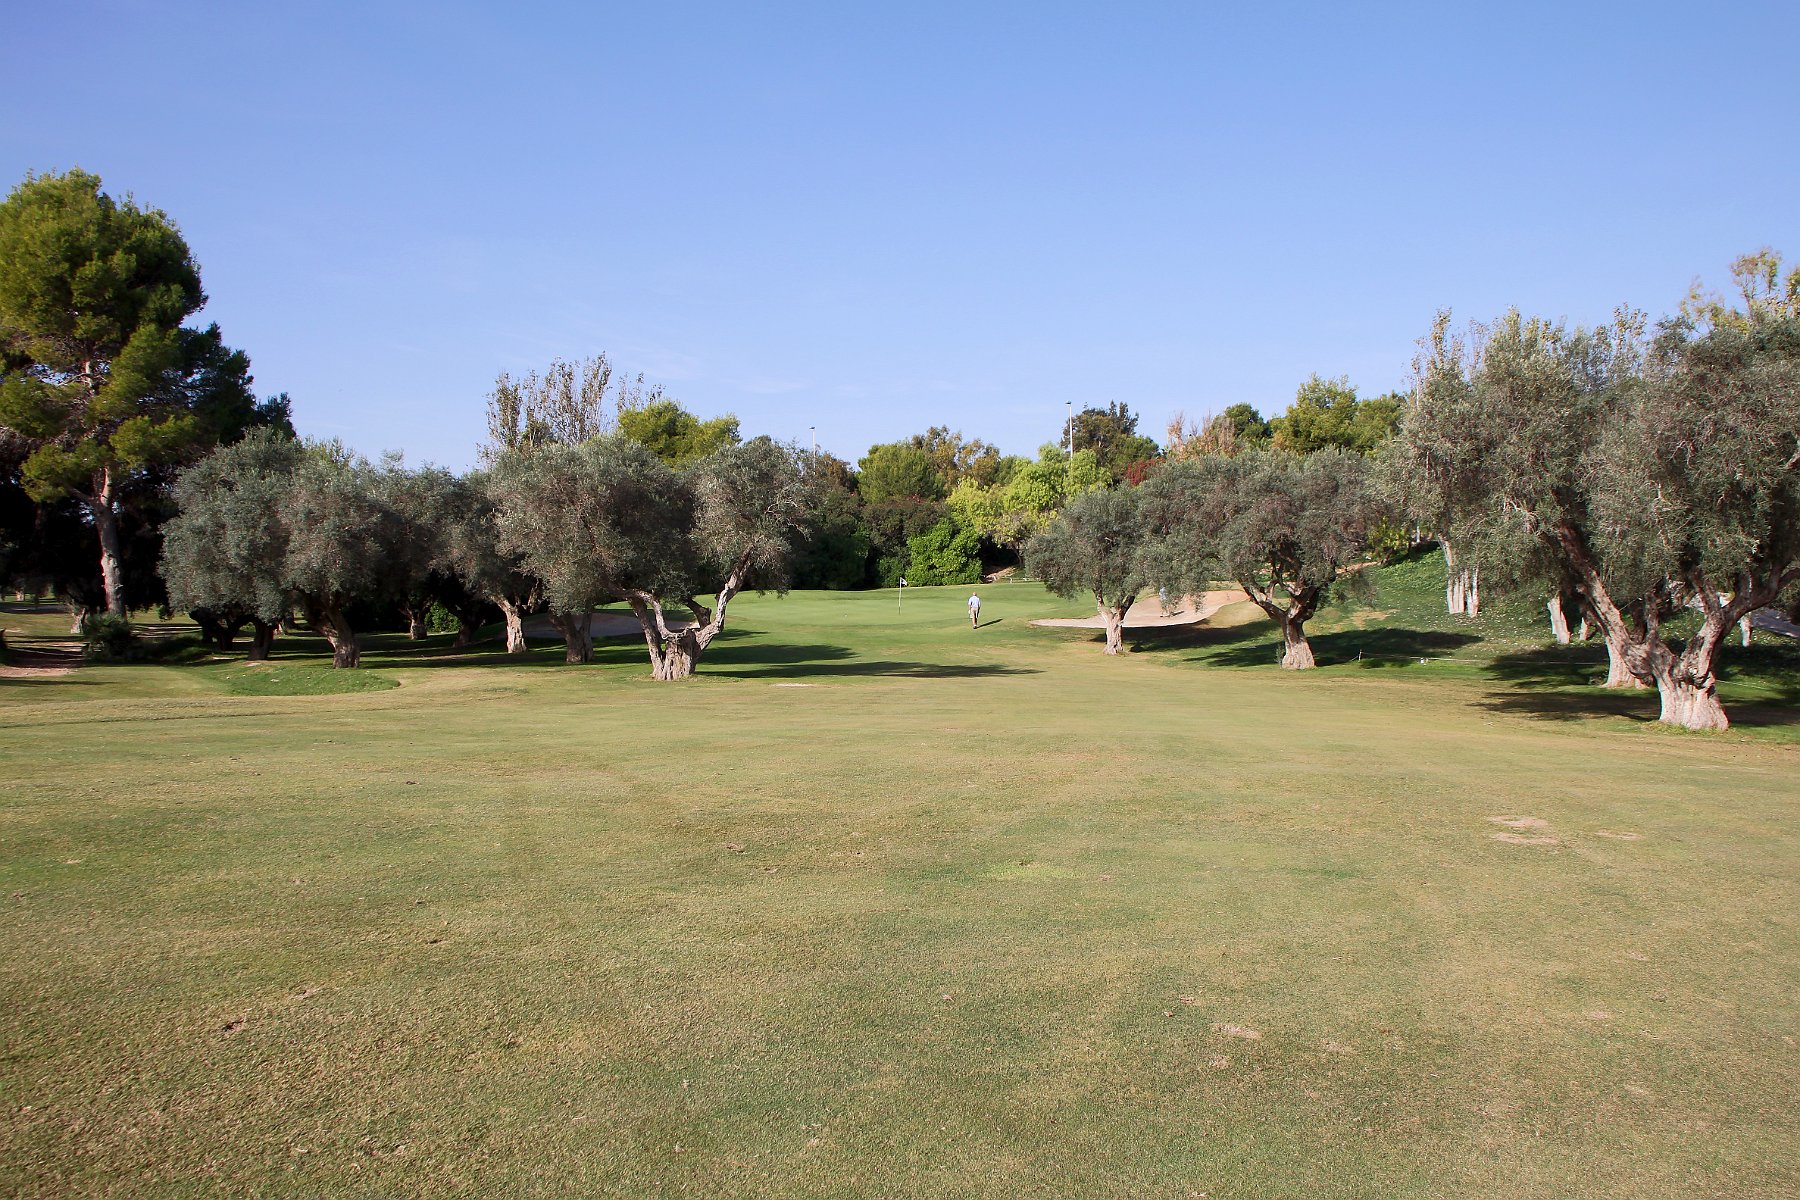 IMG_8676.JPG - Rigtig flot beliggende green omgivet af oliventræer.